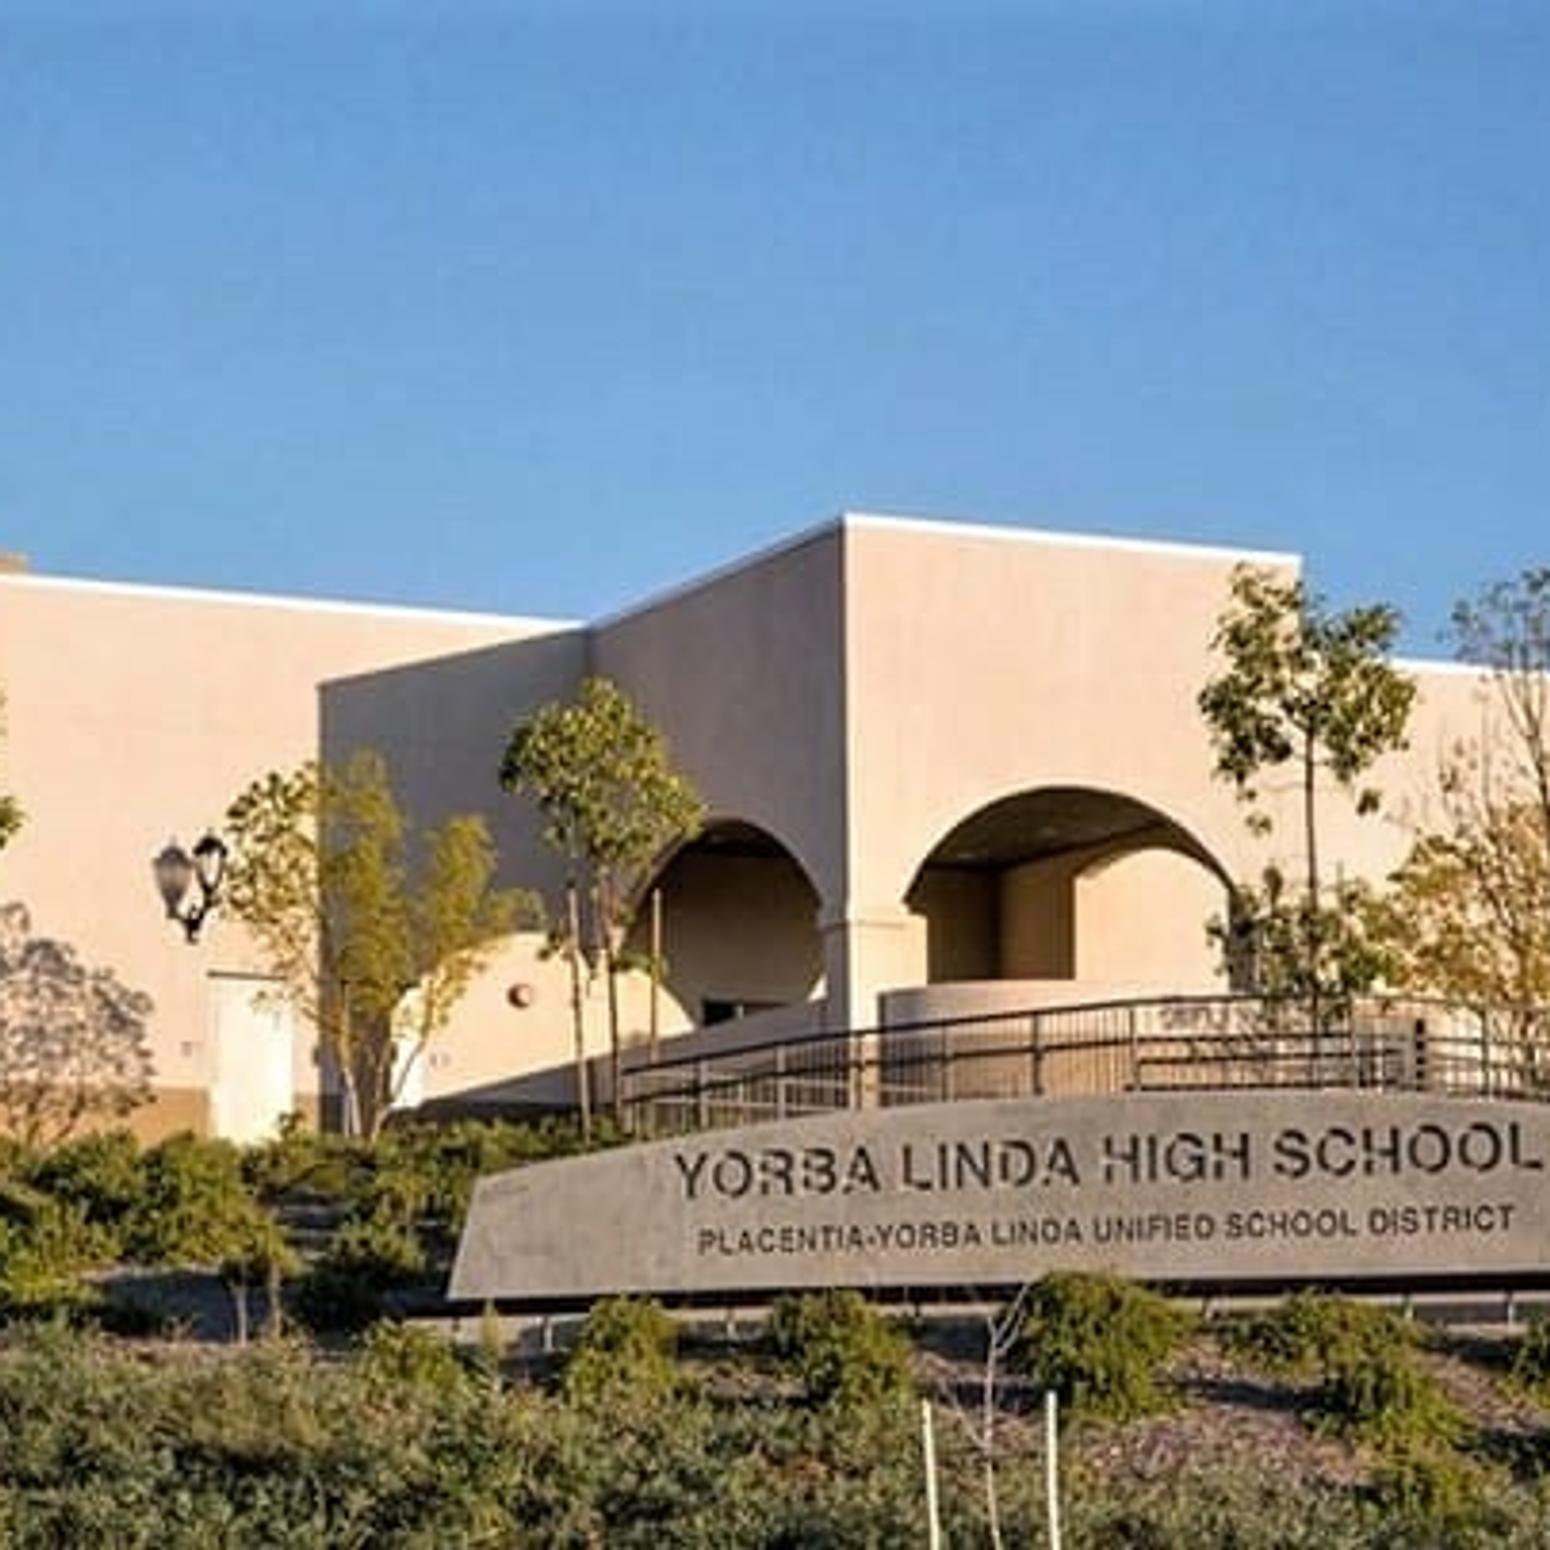 Placentia Yorba Linda Unified School District Schulgebäude Außenansicht Kalifornien